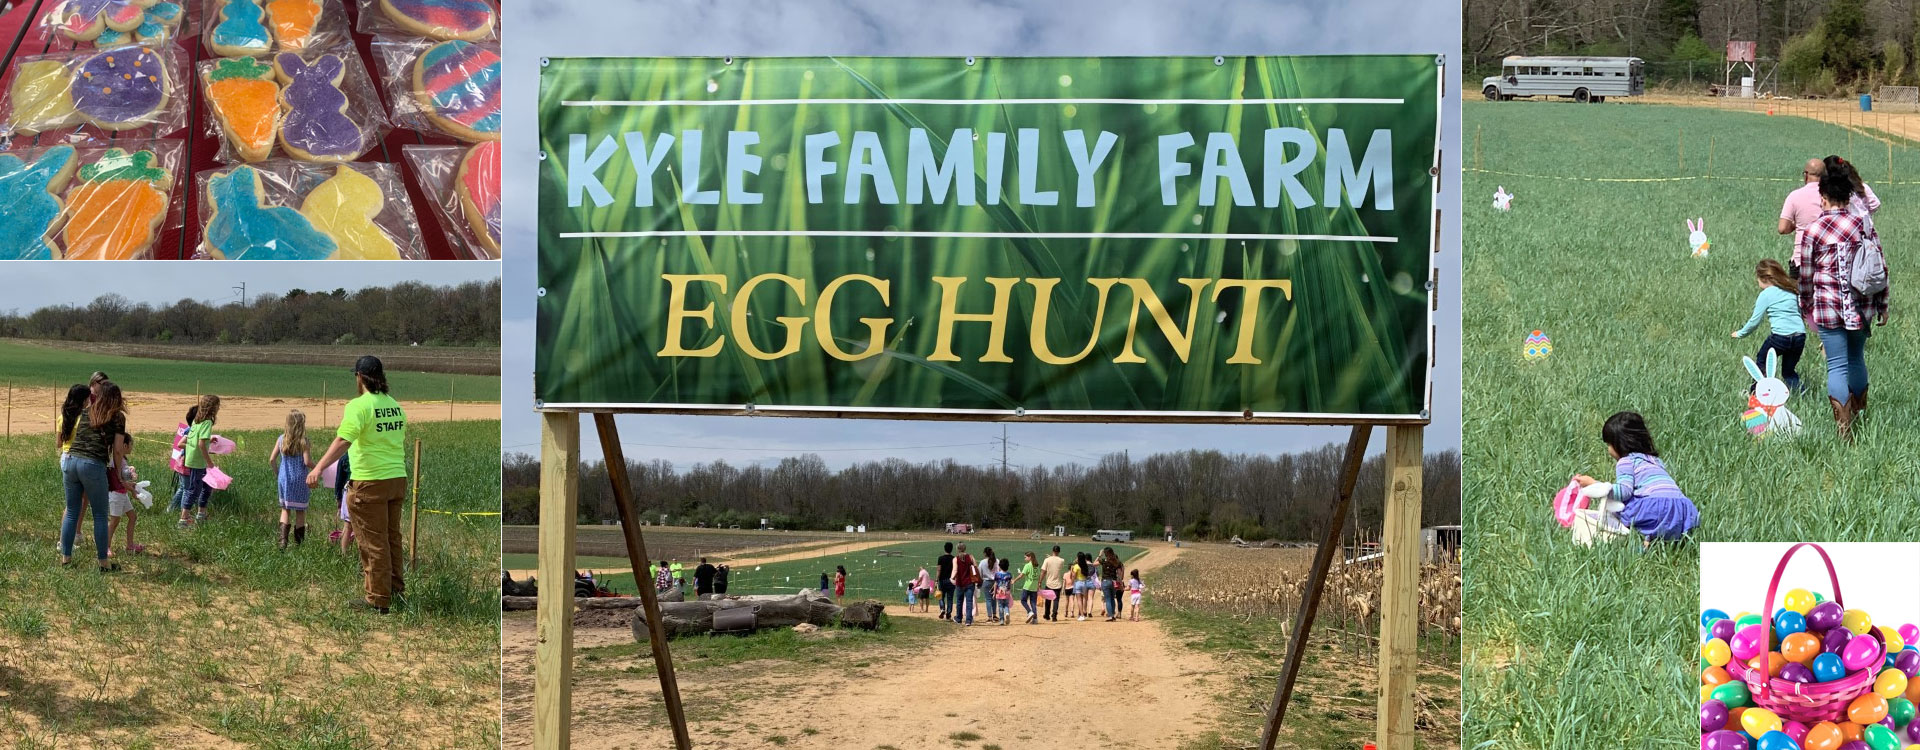 Kyle Family Farm